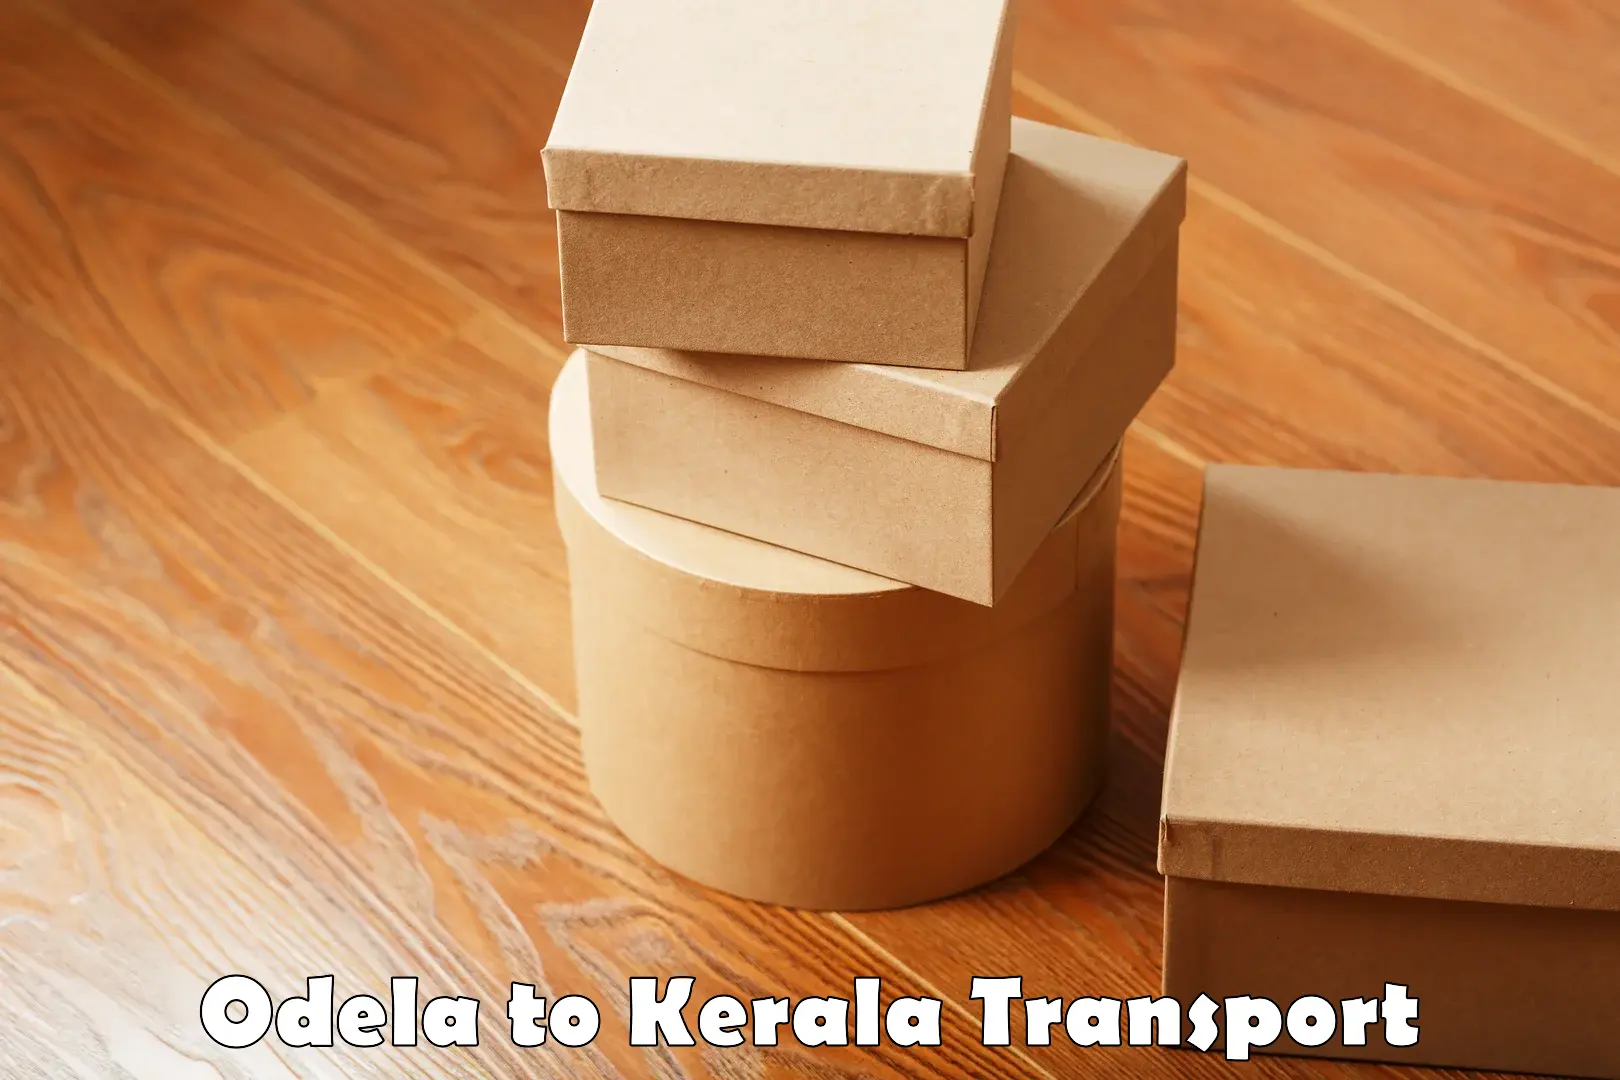 Nearest transport service Odela to Kakkayam